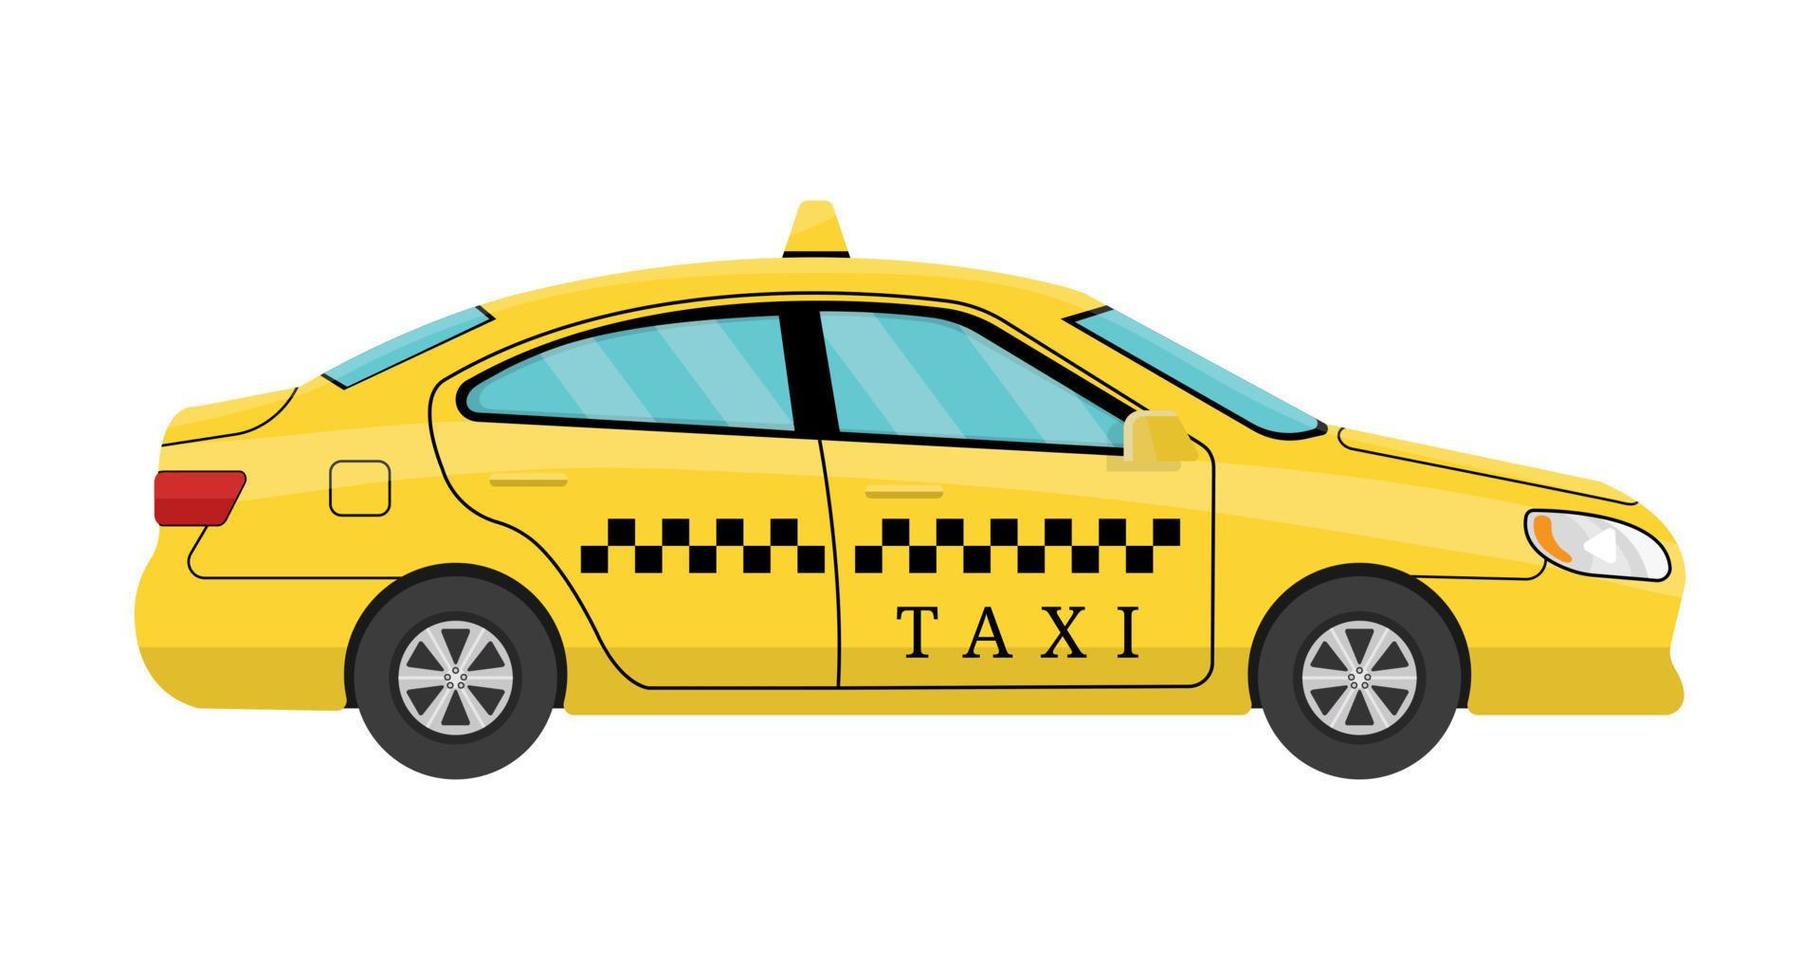 biltaxi i platt stil. vy från sidan. taxi gul bil hytt isolerad på vit bakgrund. för taxiserviceapp, transportföretagsannons, infografik. vektor illustration för din design.